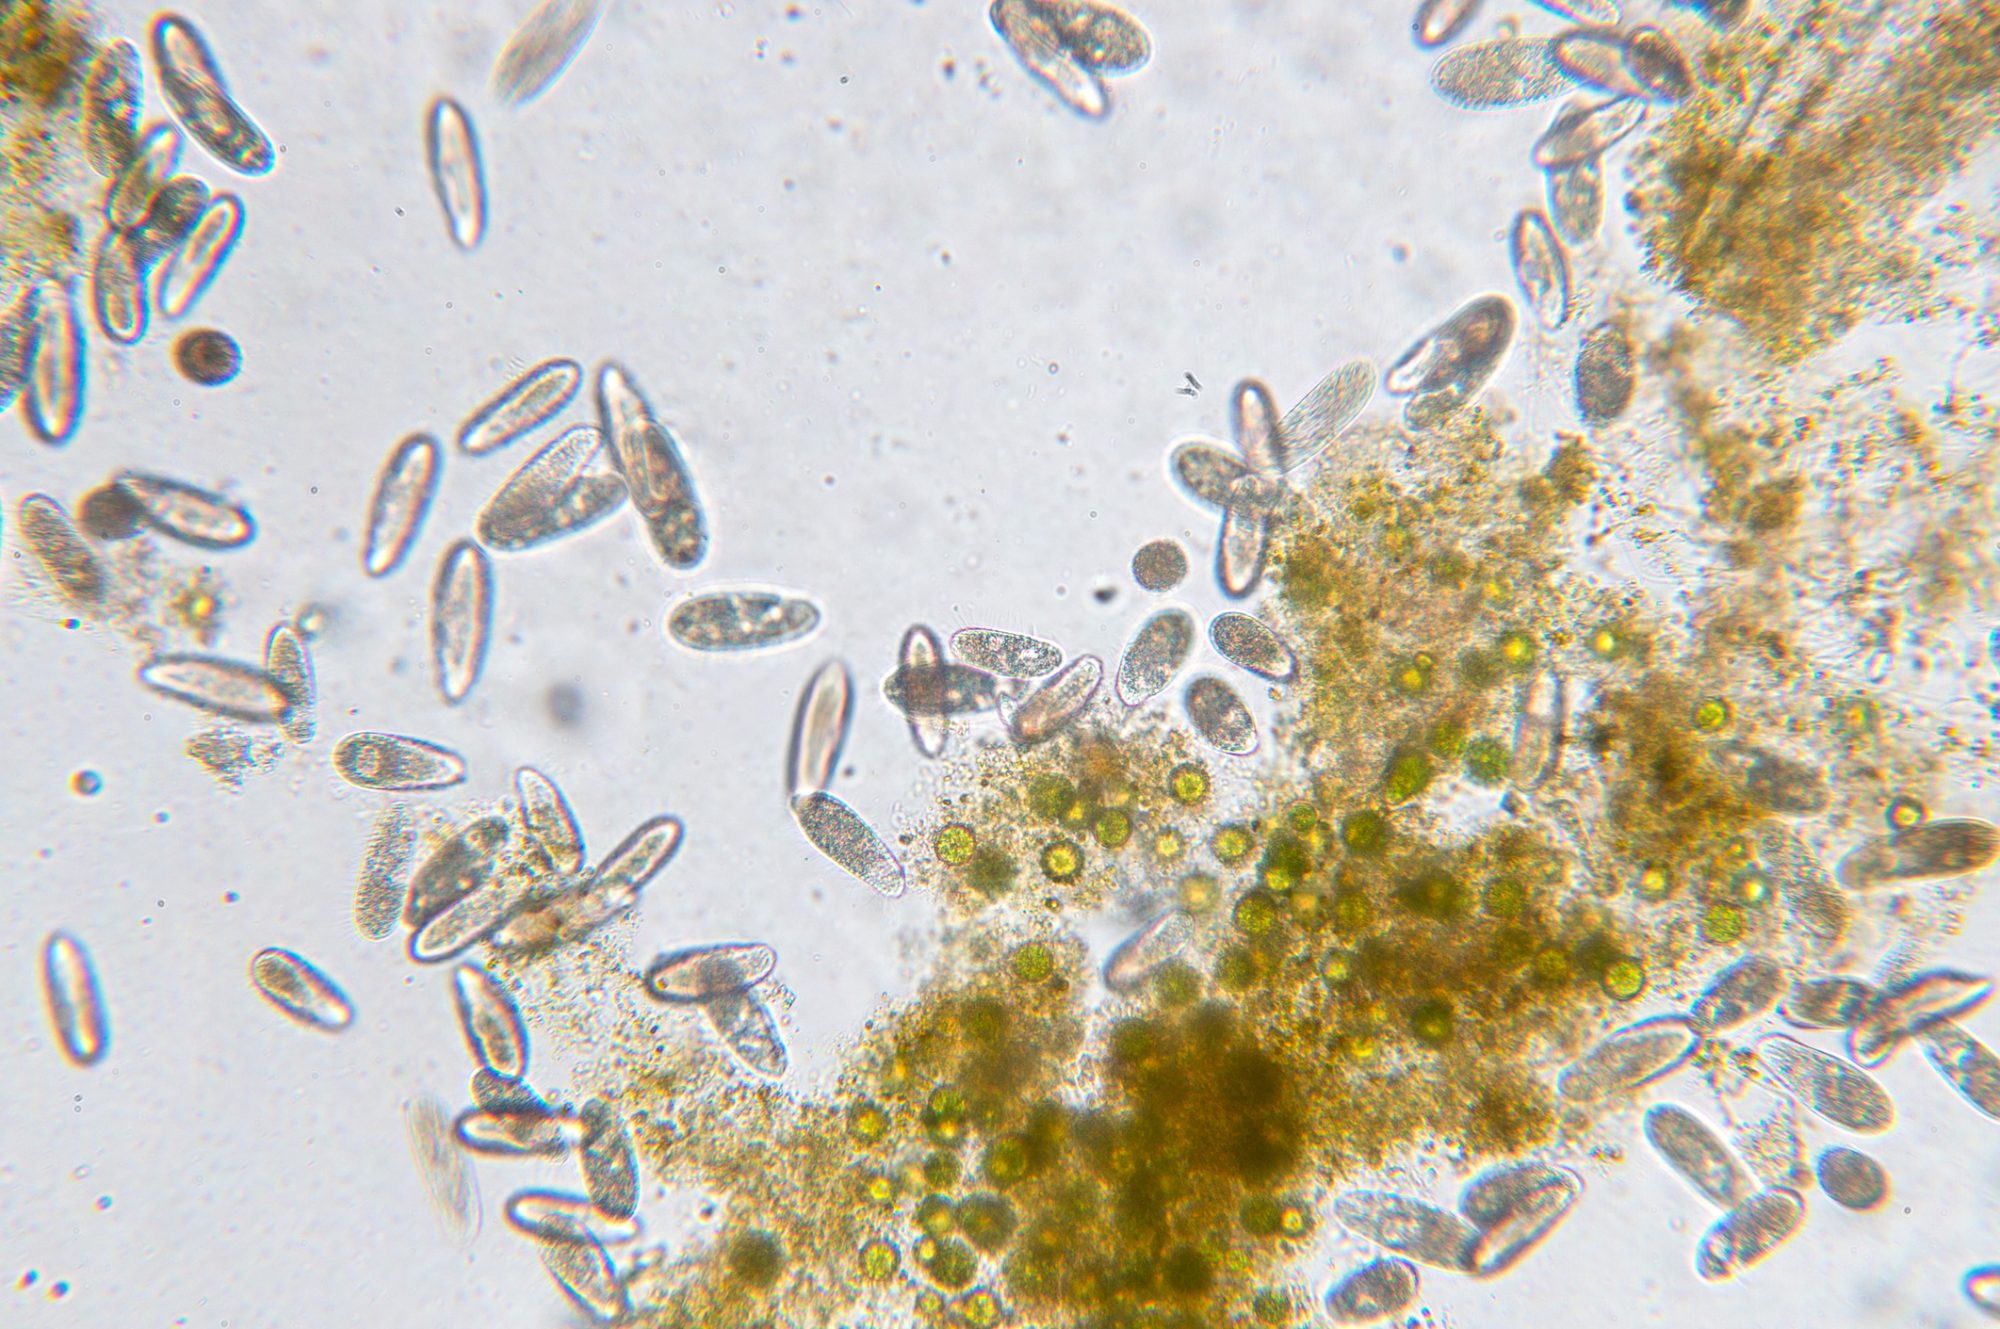 Tetrahymena adalah genus bakteri bersilia uniseluler yang terlihat di bawah mikroskop